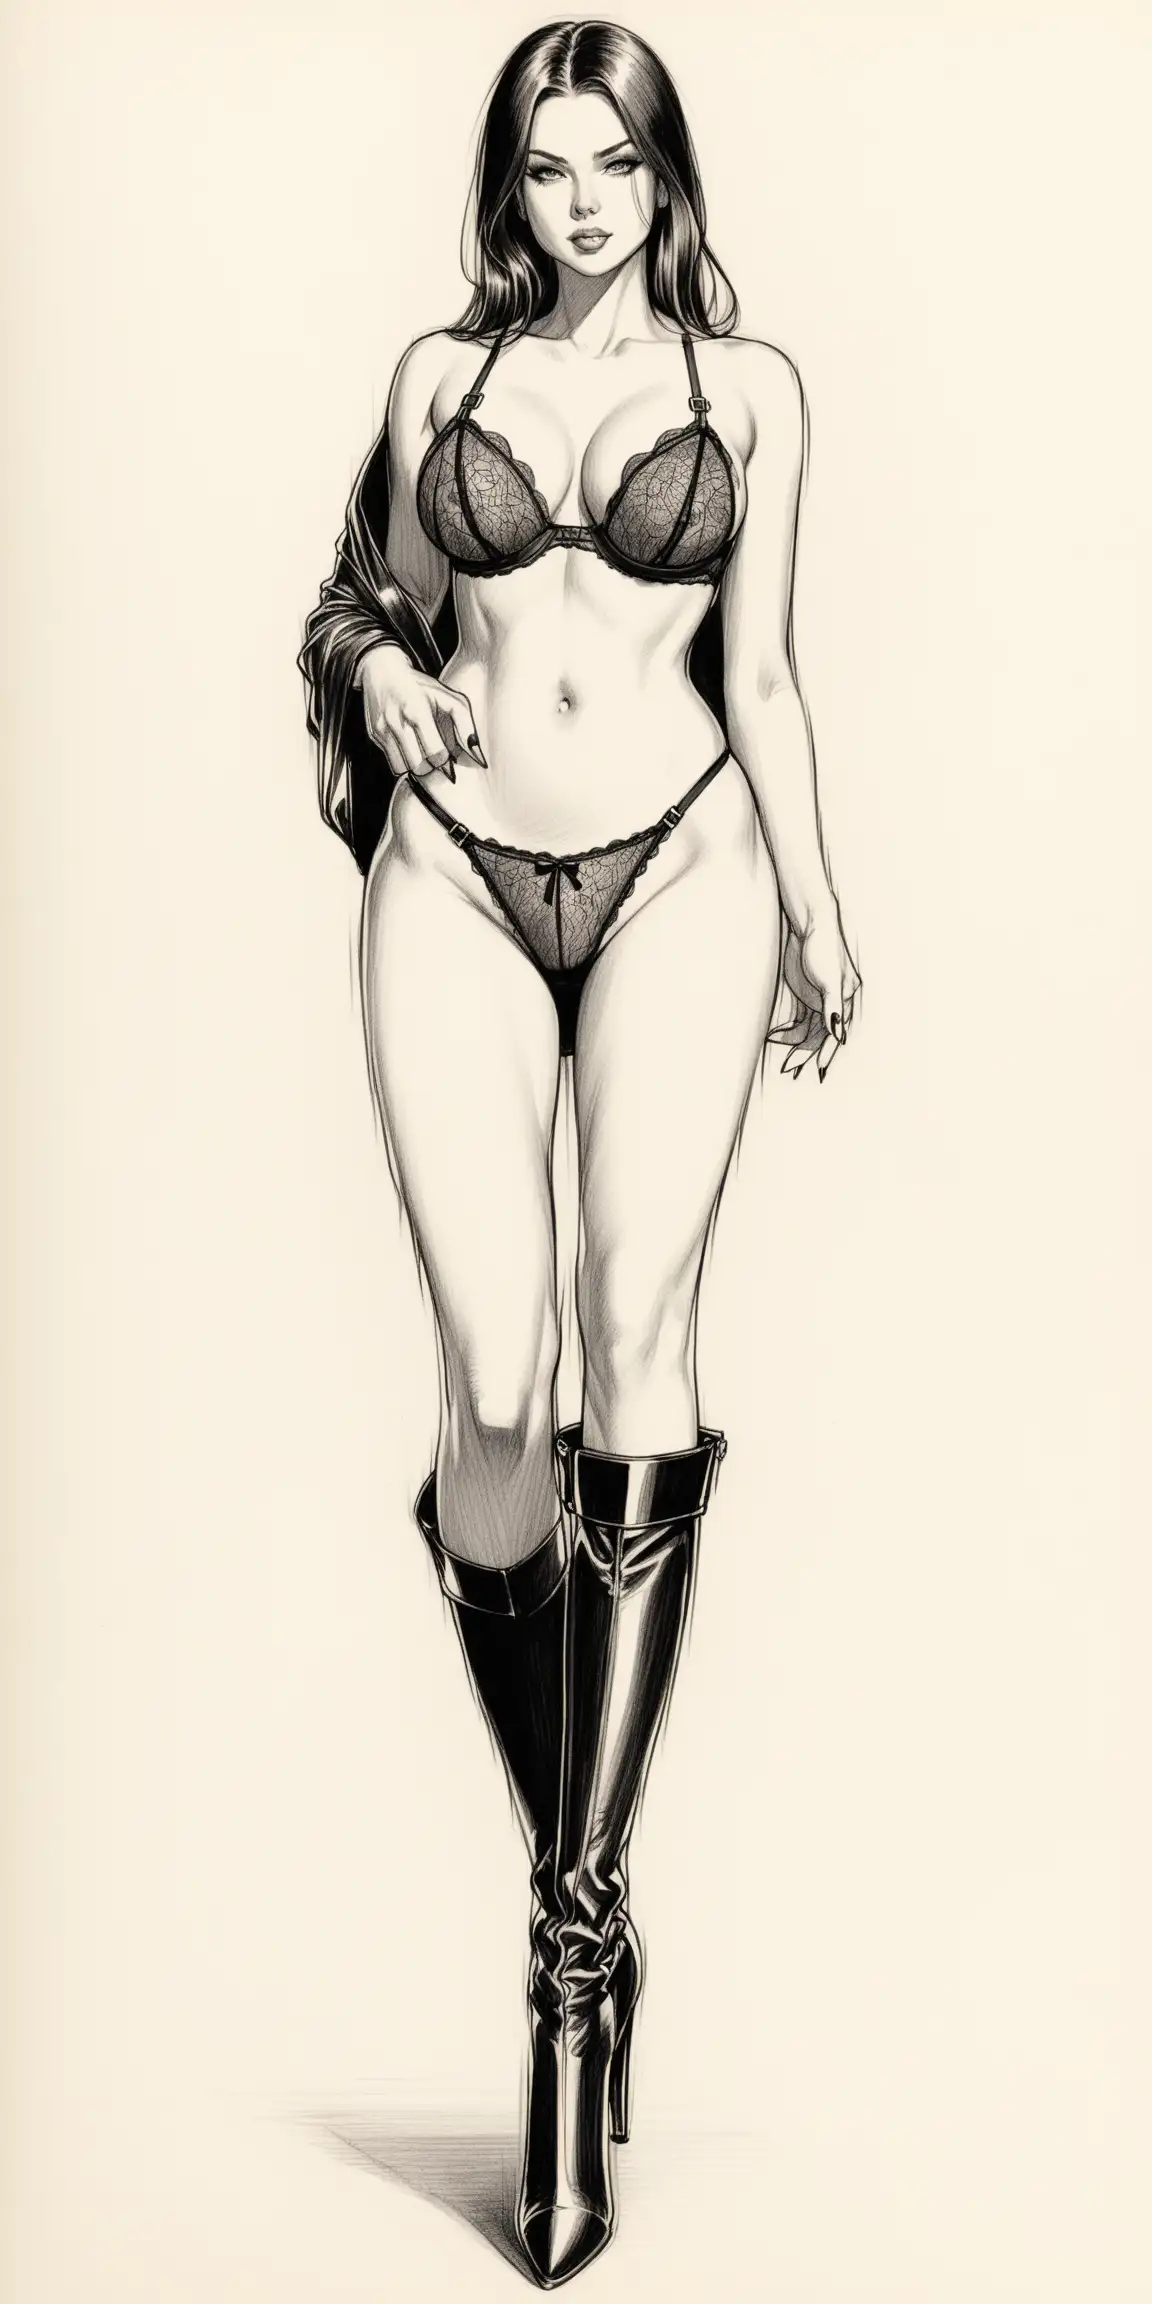 un dessin au crayon d'une femme dominatrice, habillée en lingerie avec des cuissardes talon aiguille


